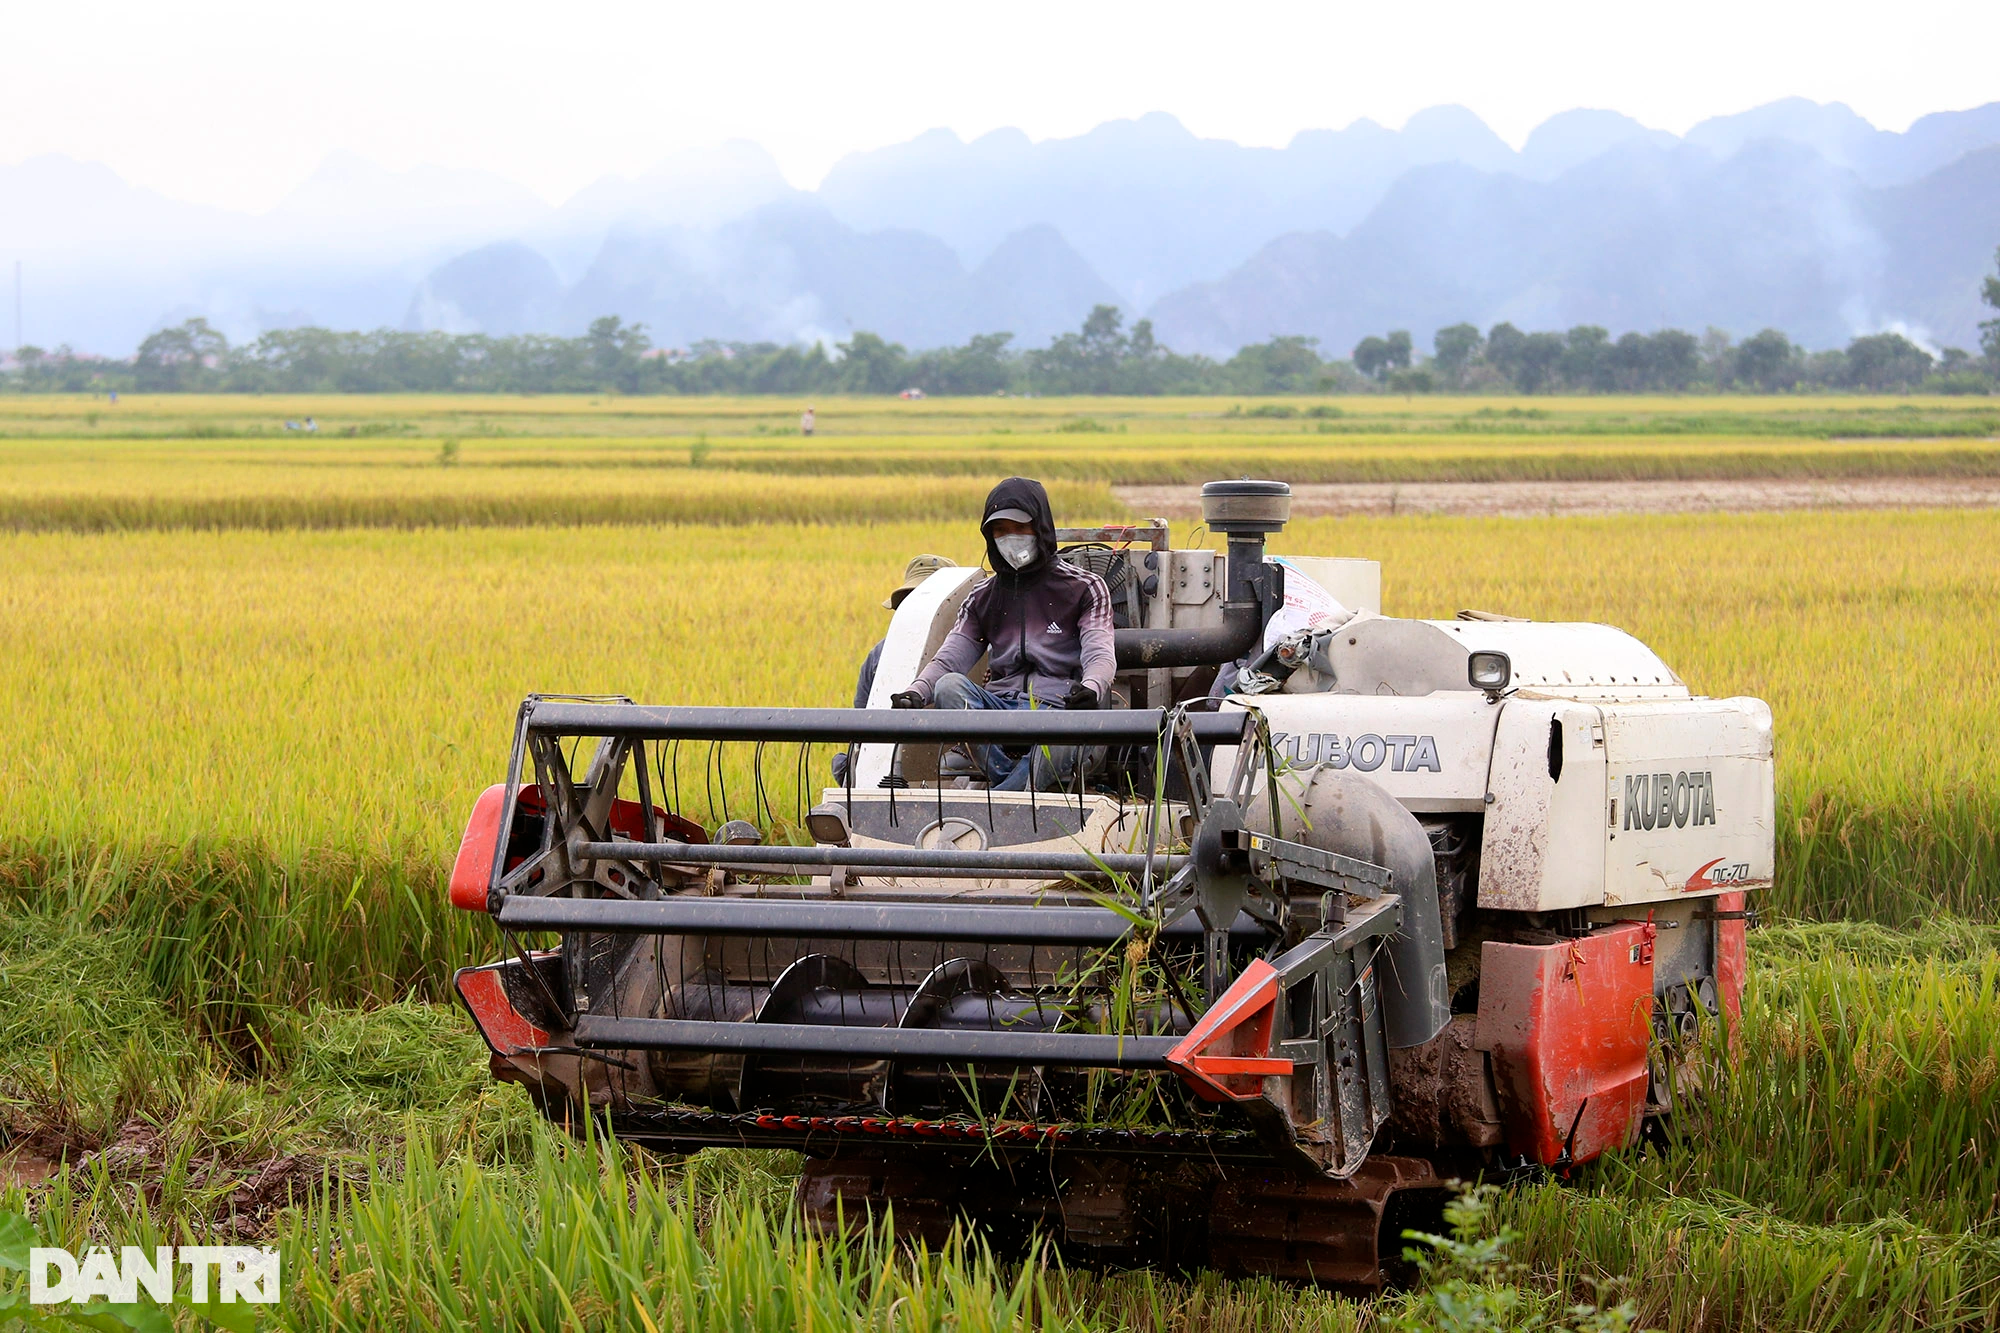 Ngắm đồng lúa thẳng cánh cò bay trong mùa gặt ở ngoại thành Hà Nội - 7